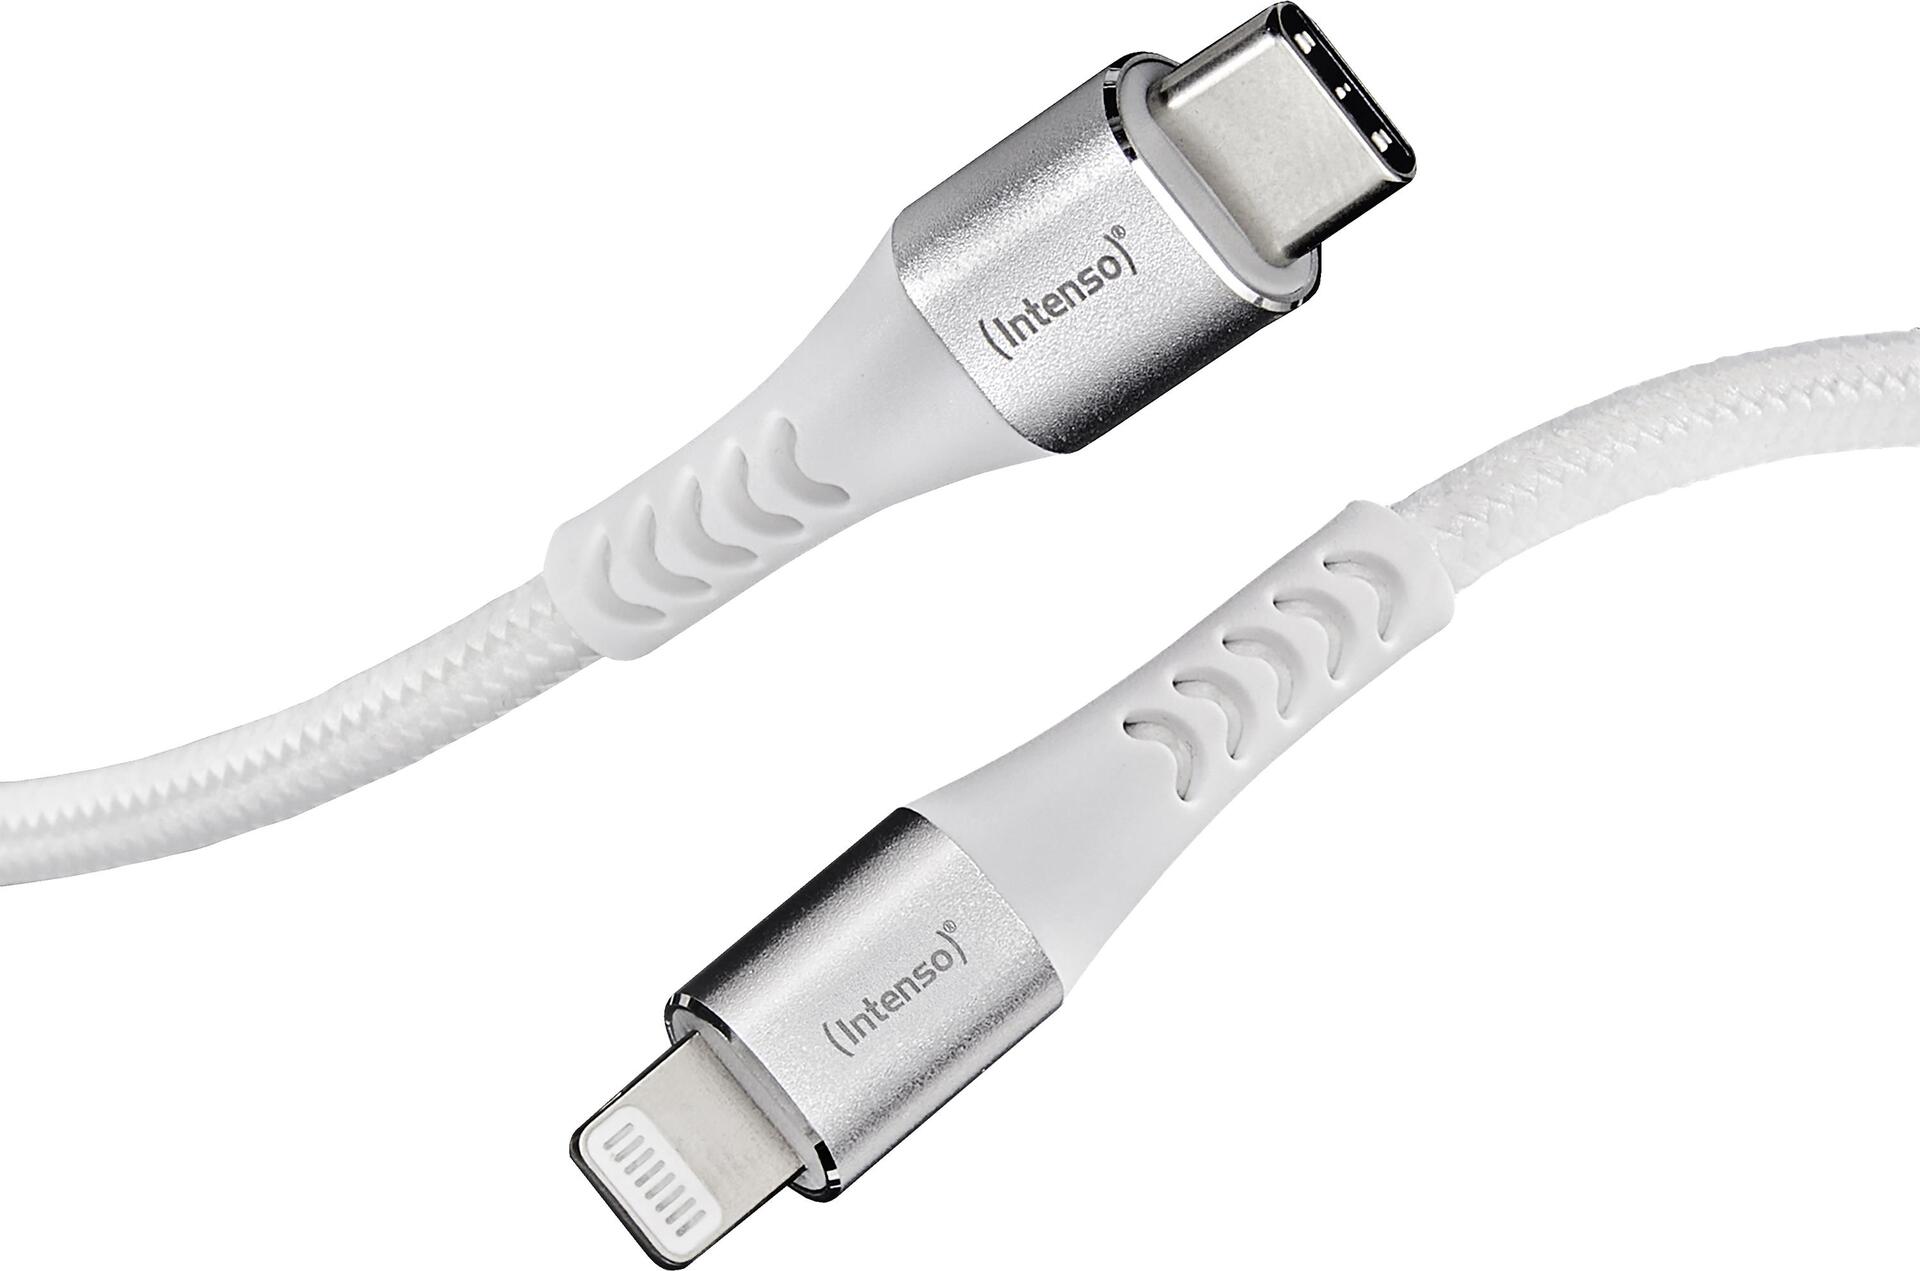 Intenso USB-Cable C315C, USB-C auf USB-C Daten- und Ladekabel, Power Delivery mit bis zu 60 Watt, Nylon, 1.5 Meter, weiß